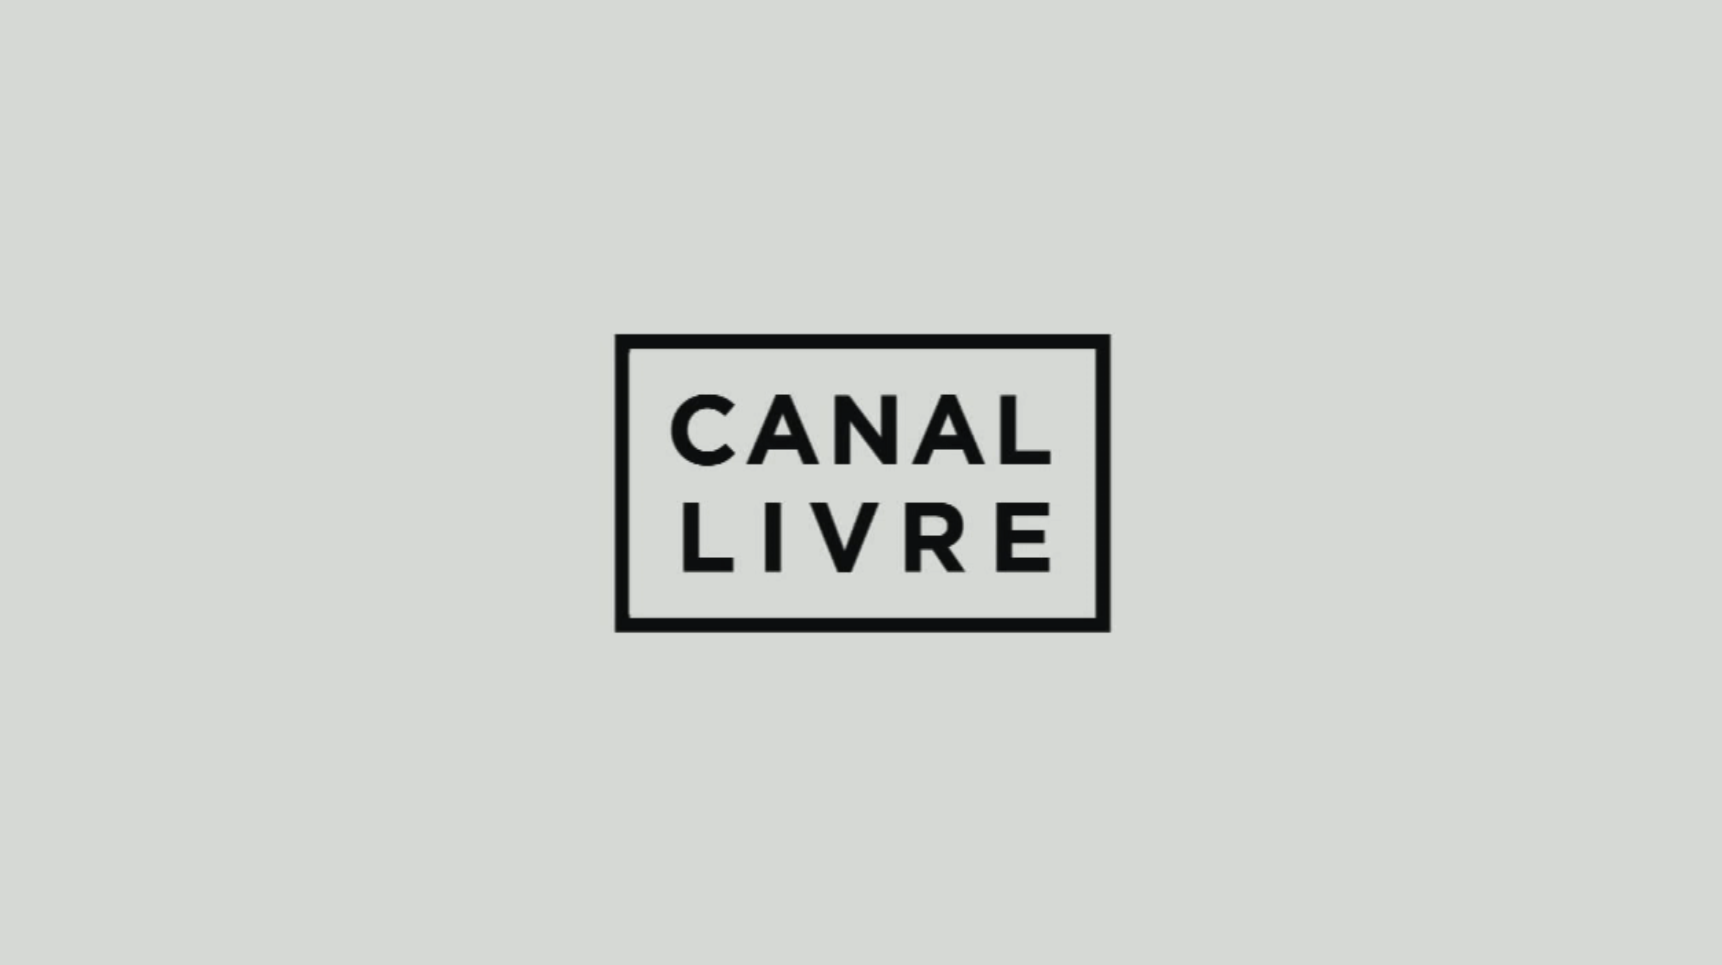 CANAL LIVRE